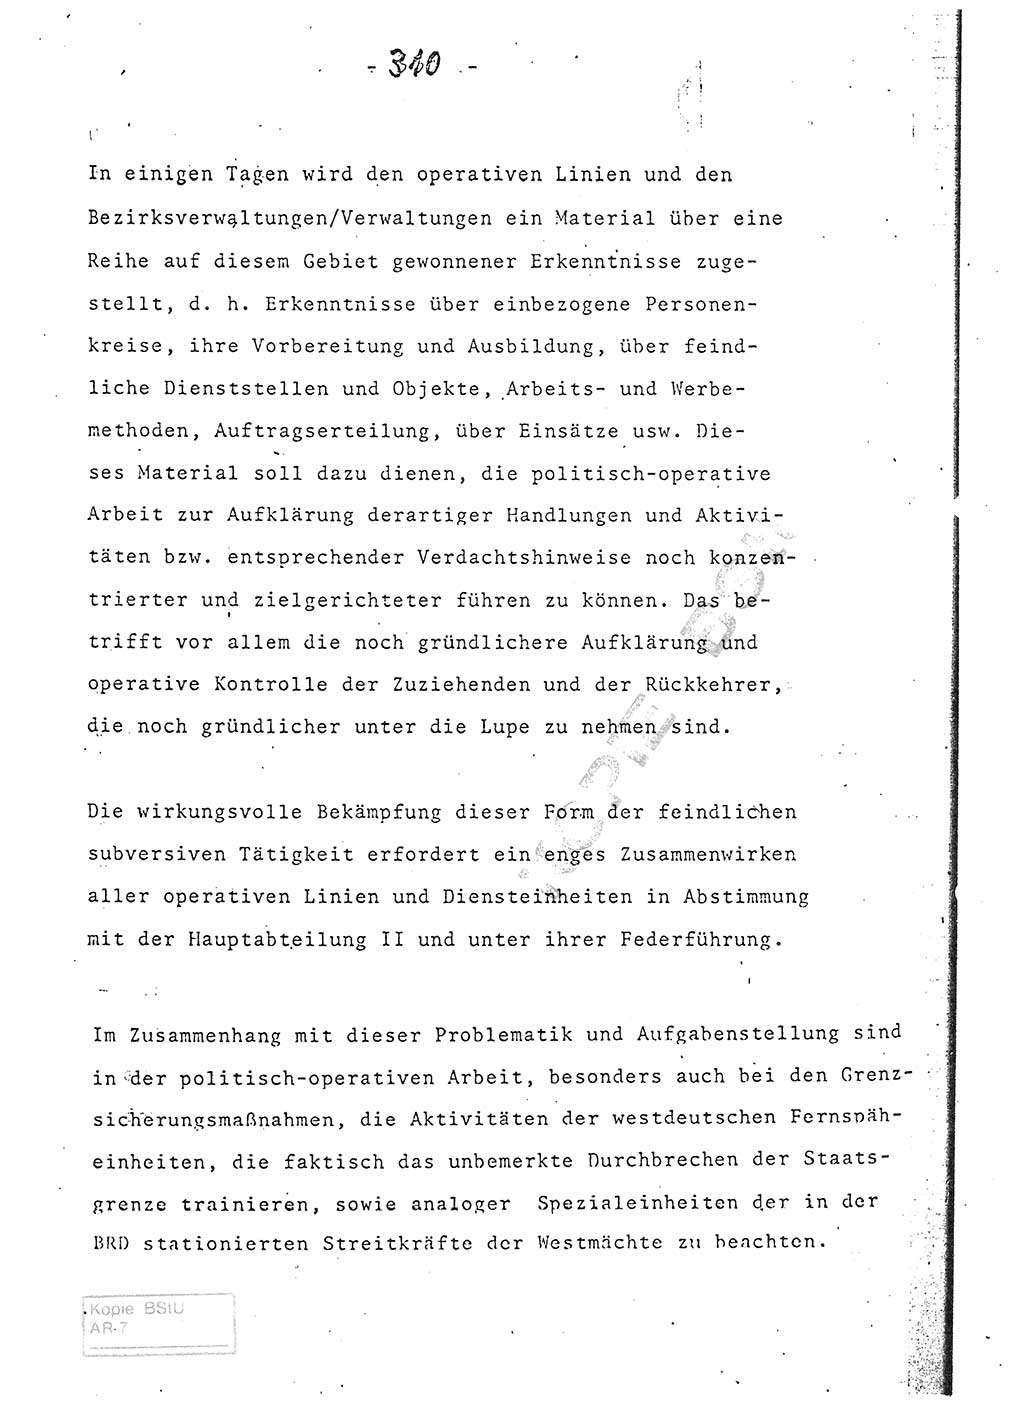 Referat (Entwurf) des Genossen Minister (Generaloberst Erich Mielke) auf der Dienstkonferenz 1972, Ministerium für Staatssicherheit (MfS) [Deutsche Demokratische Republik (DDR)], Der Minister, Geheime Verschlußsache (GVS) 008-150/72, Berlin 25.2.1972, Seite 310 (Ref. Entw. DK MfS DDR Min. GVS 008-150/72 1972, S. 310)